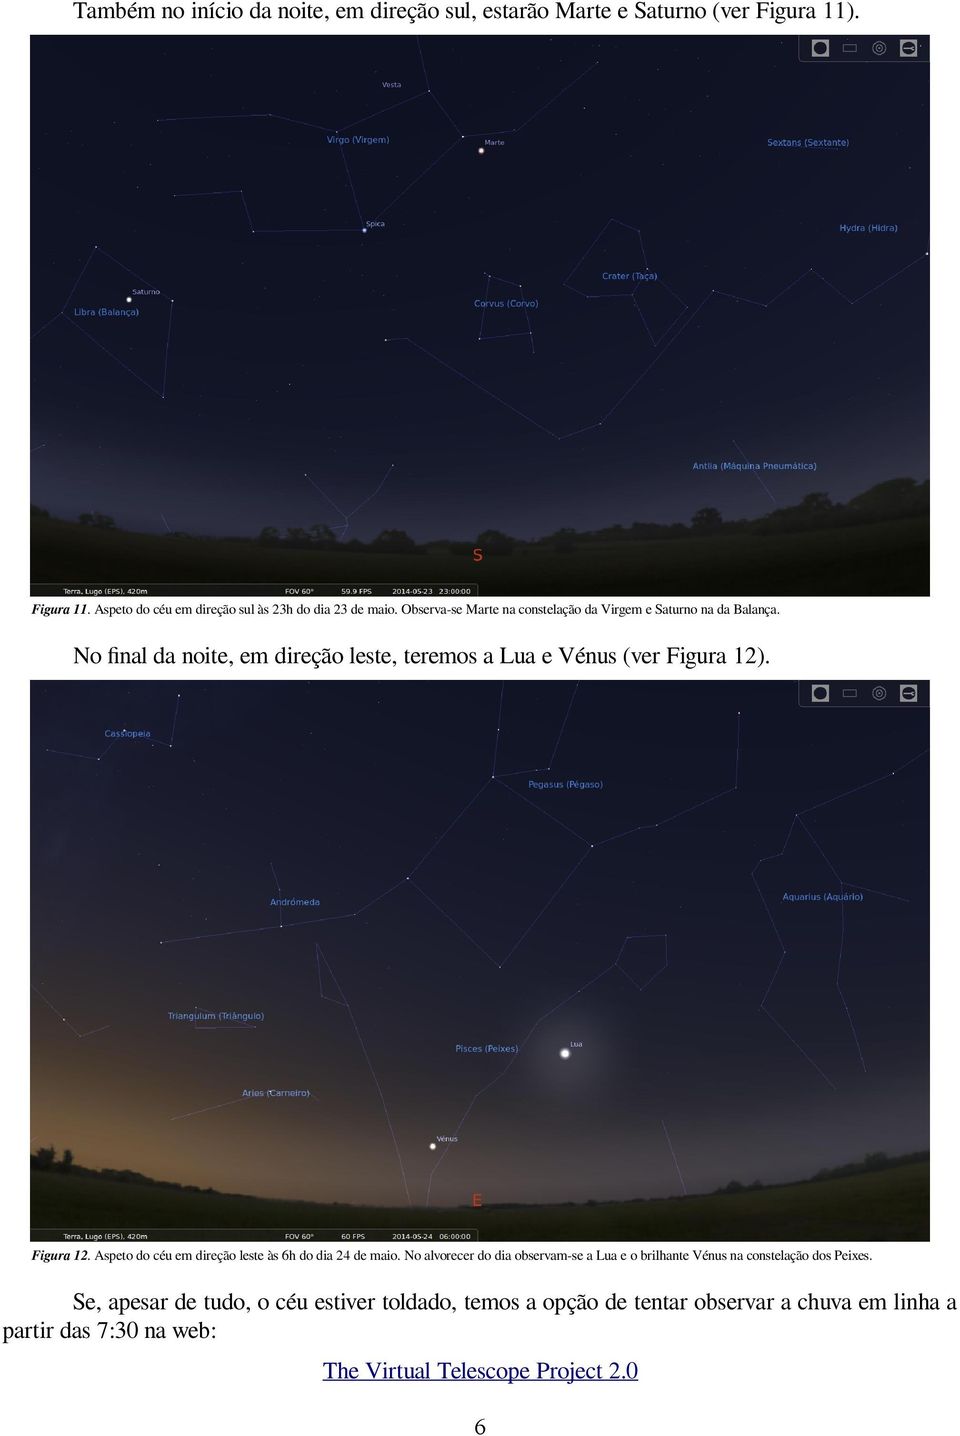 Figura 12. Aspeto do céu em direção leste às 6h do dia 24 de maio.